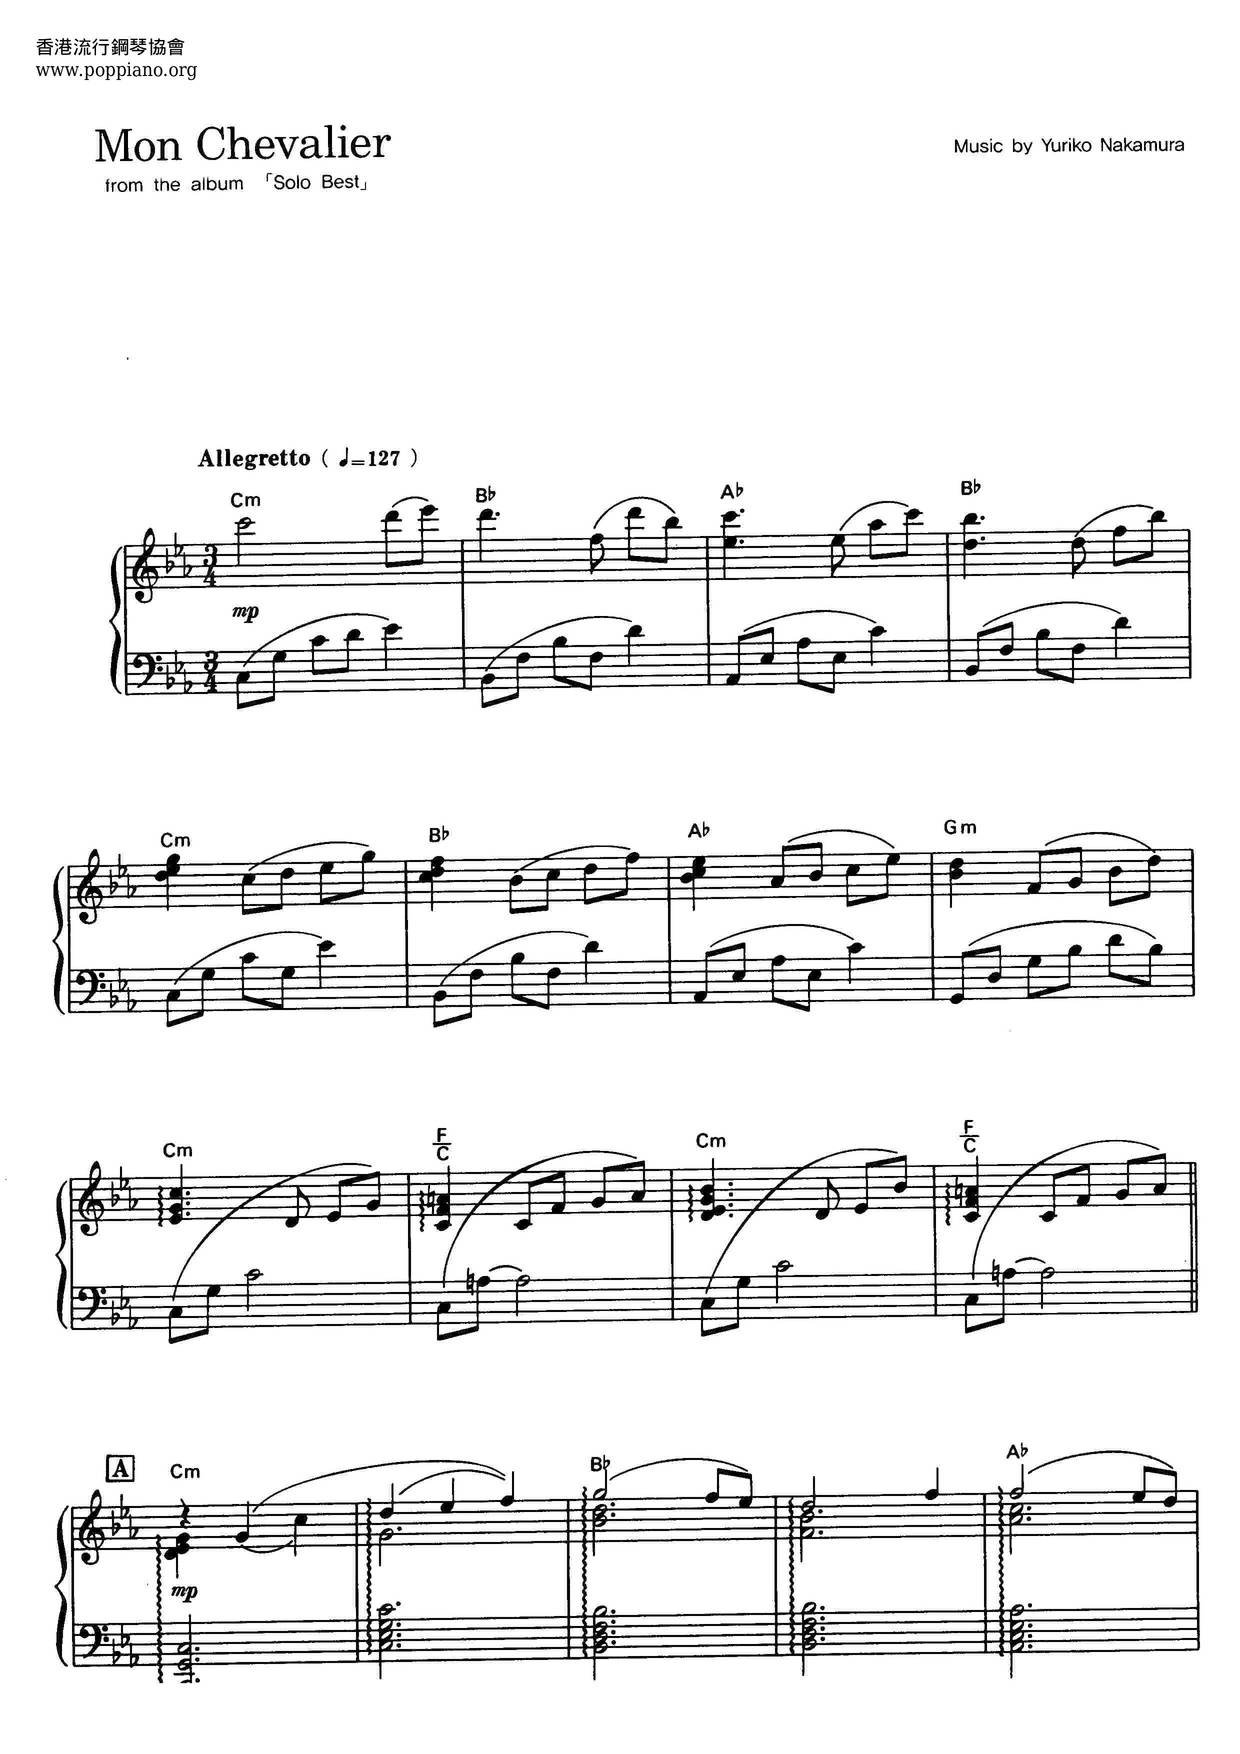 Mon Chevalier Score